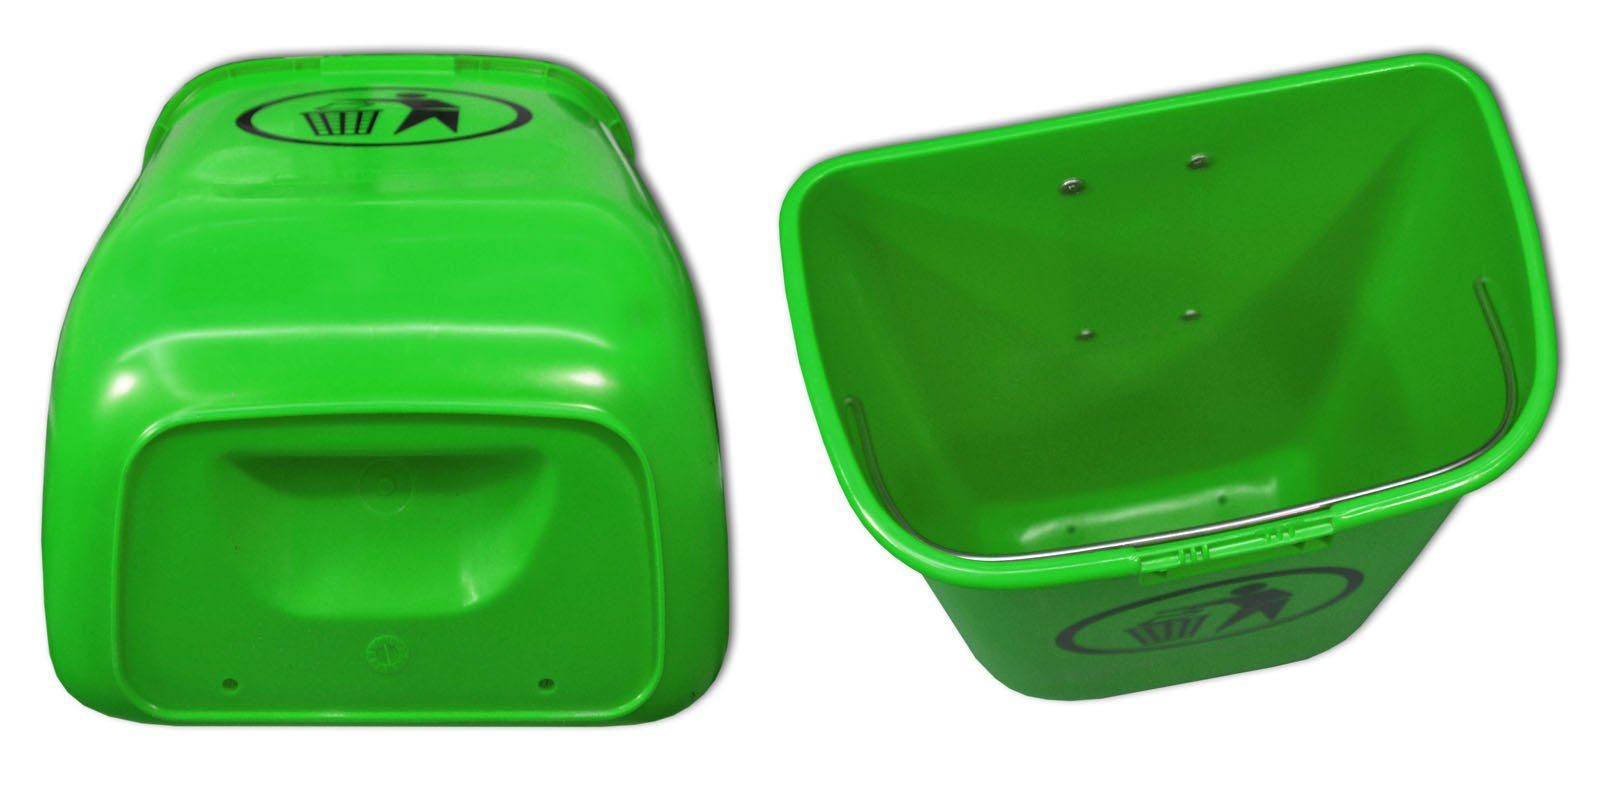 SULO Mülleimer Sulo Original Set Regenhaube grün mit Papierkorb Abfallbehälter